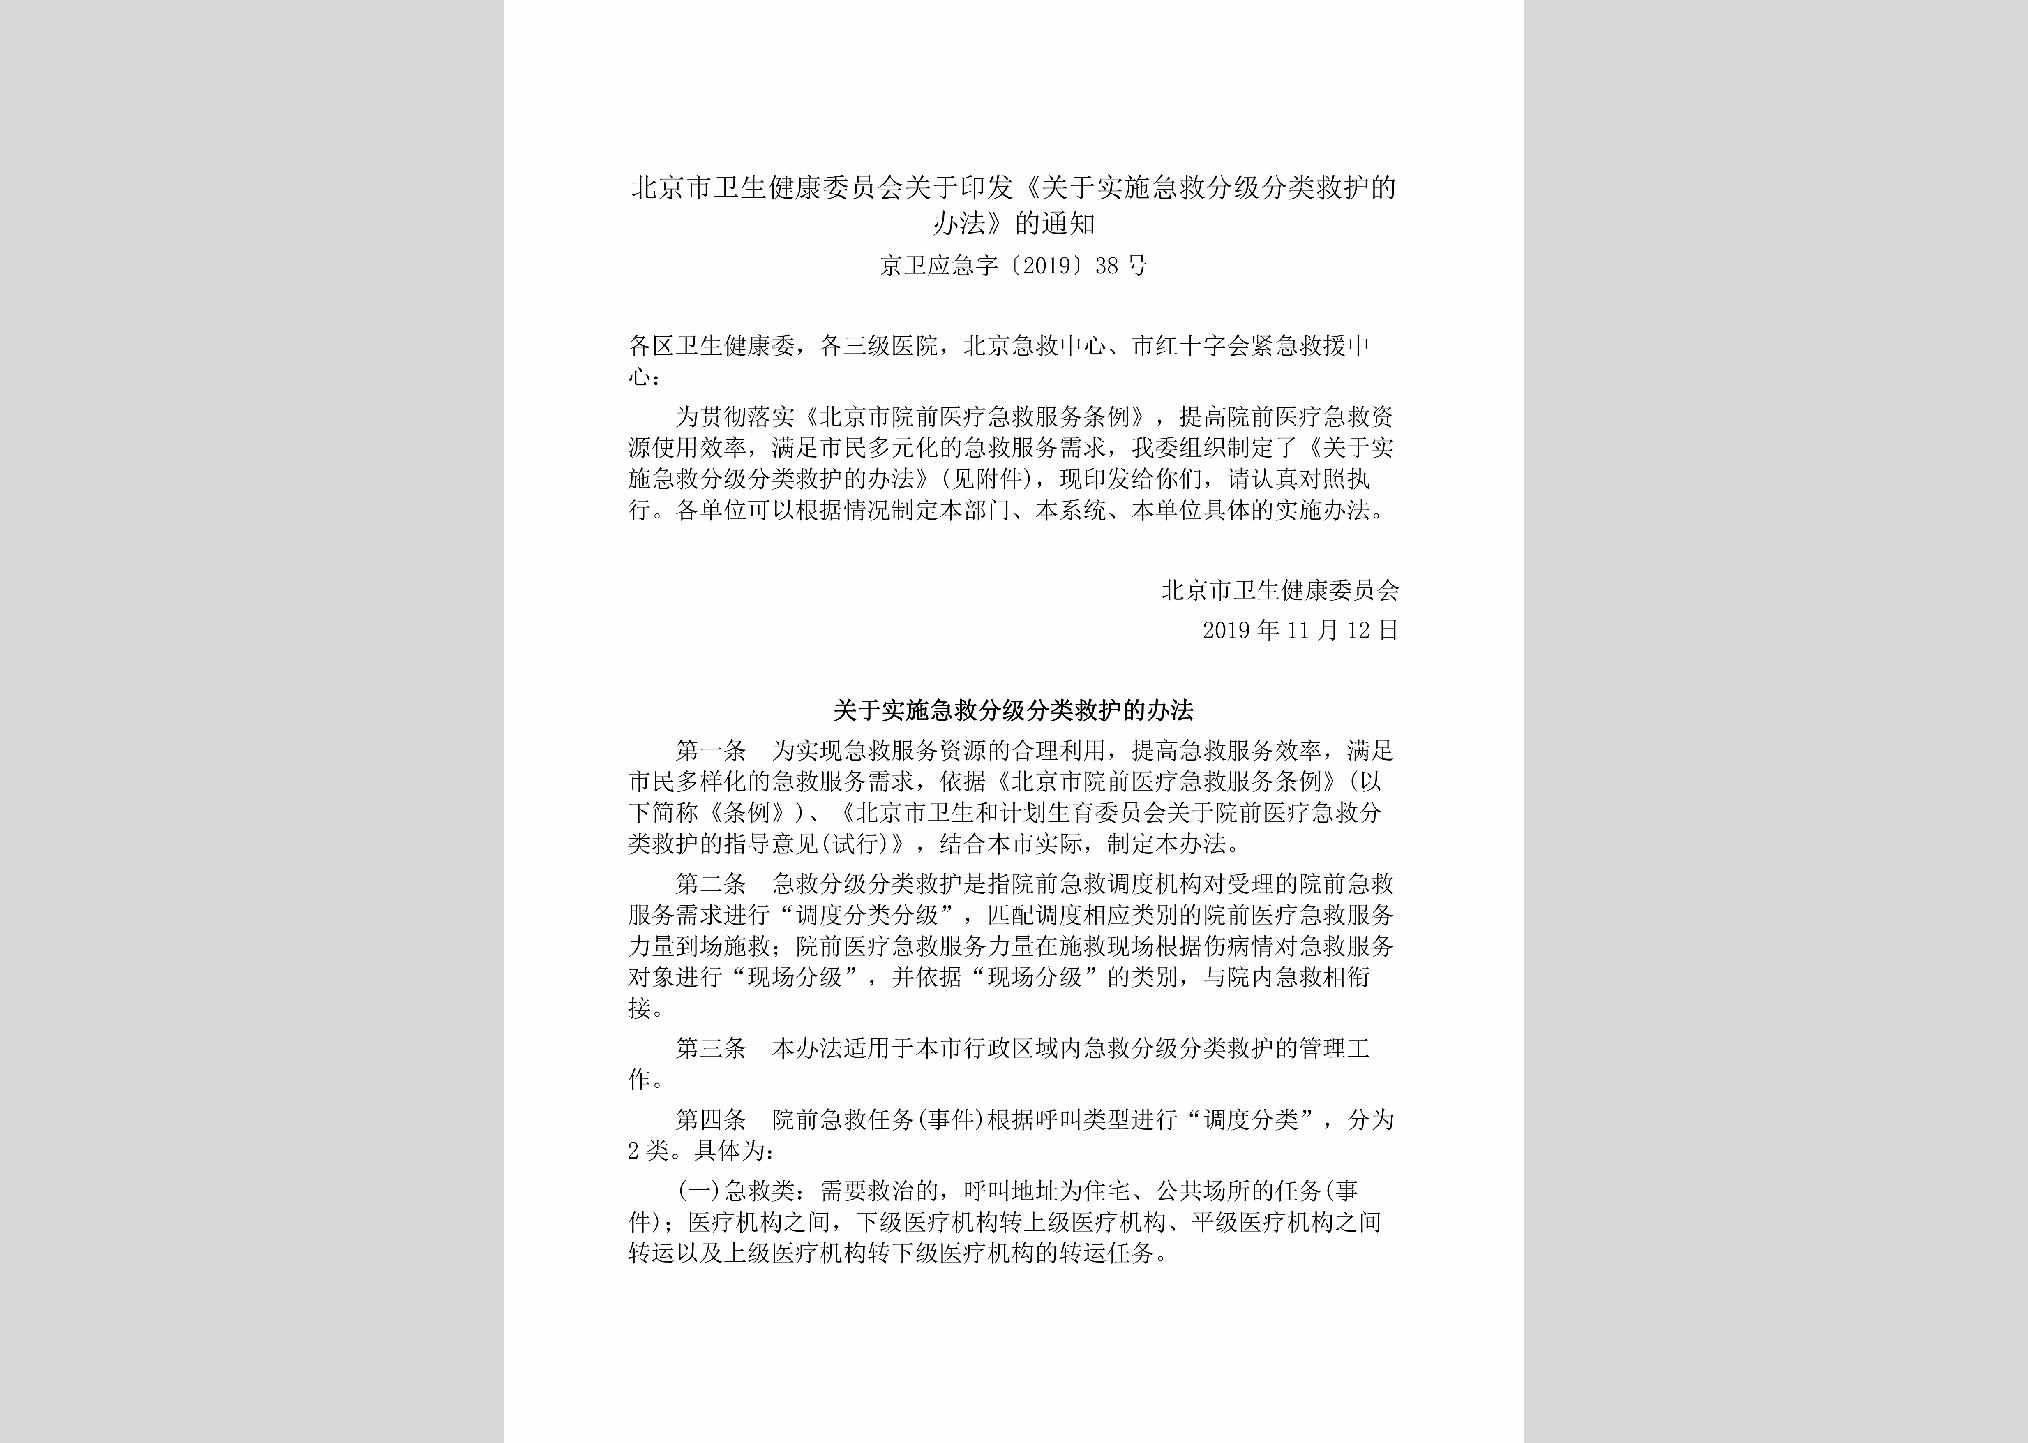 京卫应急字[2019]38号：北京市卫生健康委员会关于印发《关于实施急救分级分类救护的办法》的通知